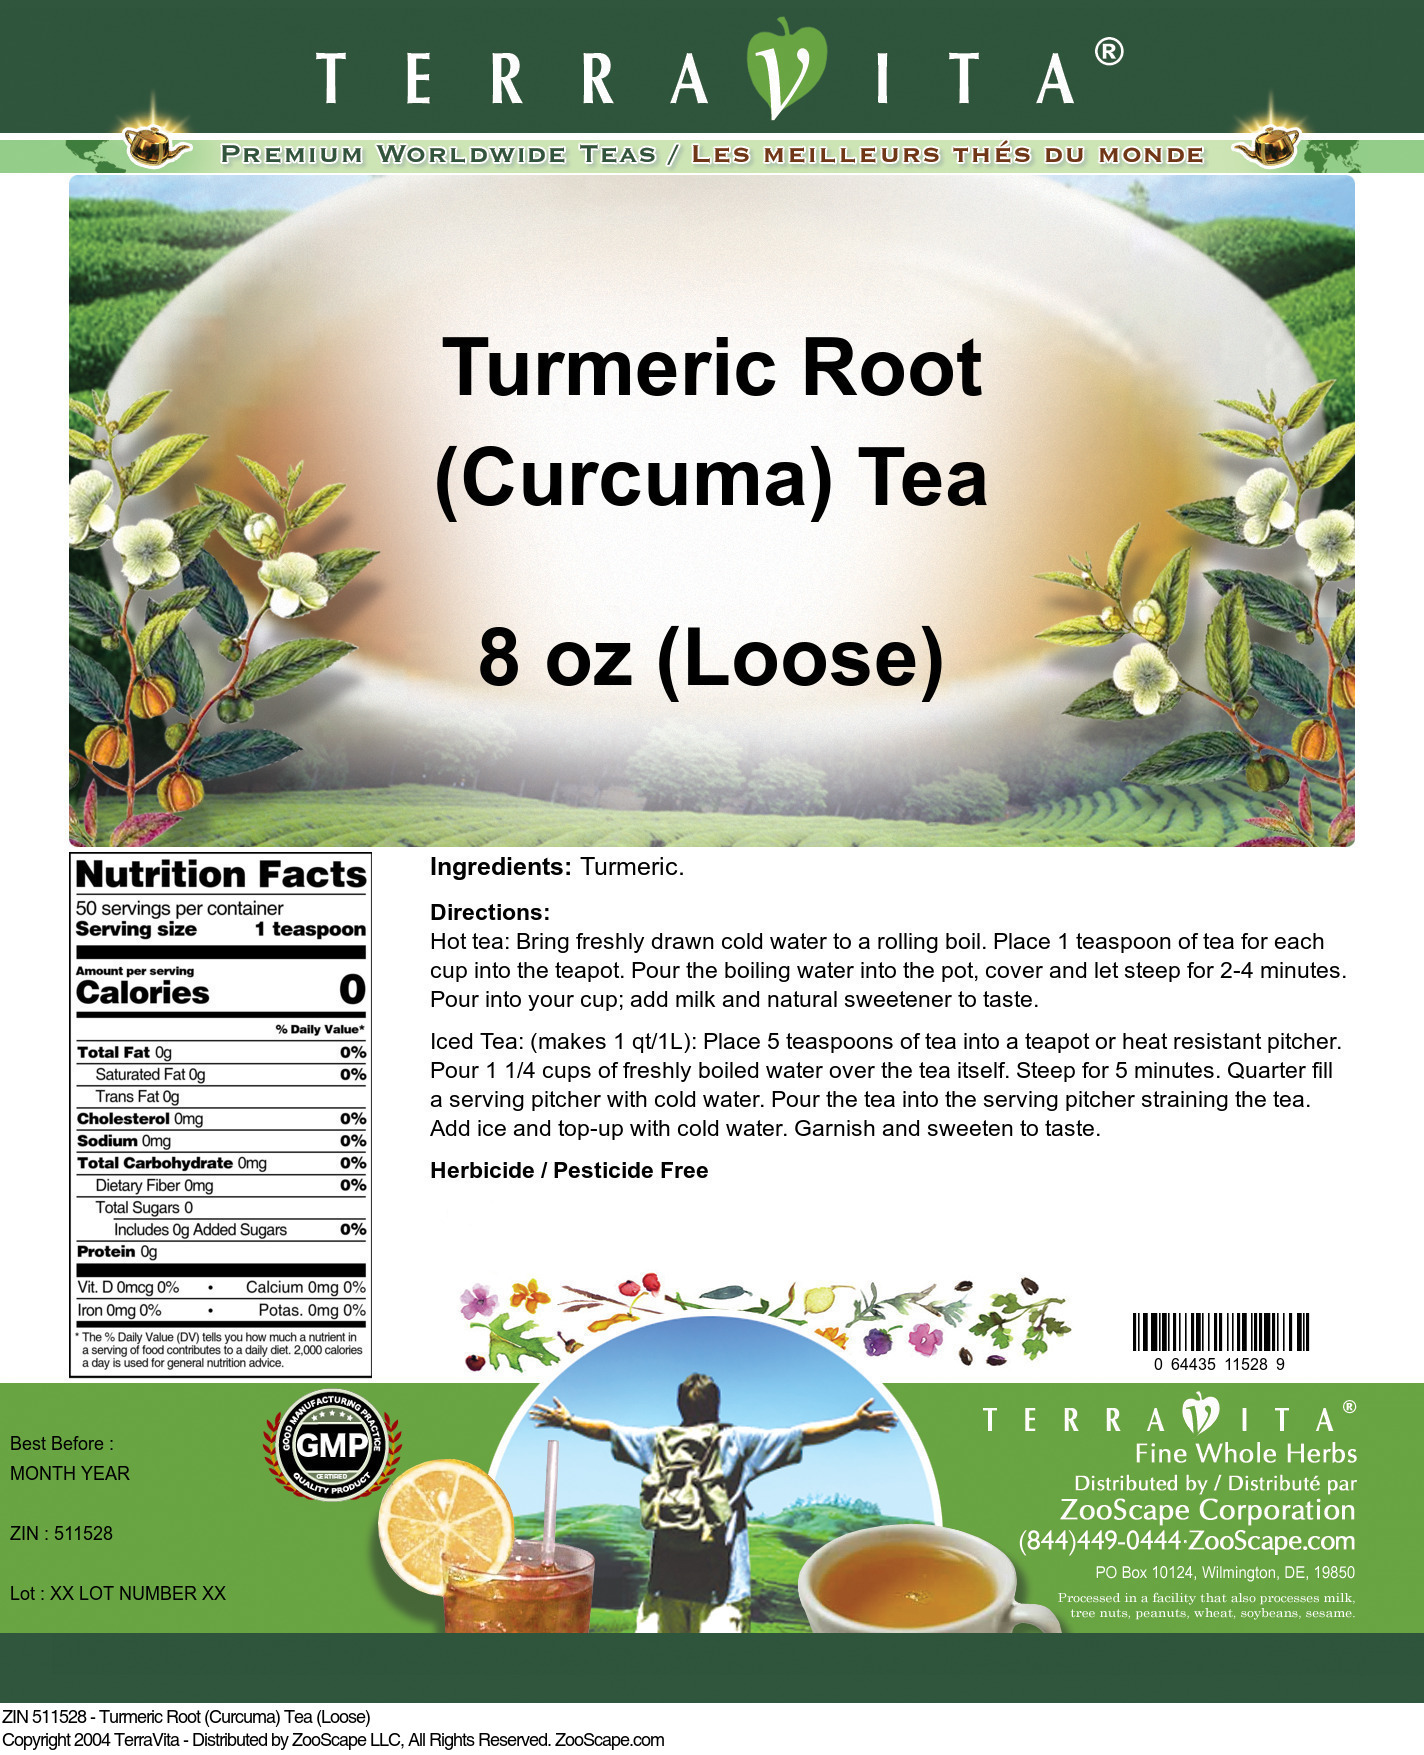 Turmeric Root (Curcuma) Tea (Loose) - Label